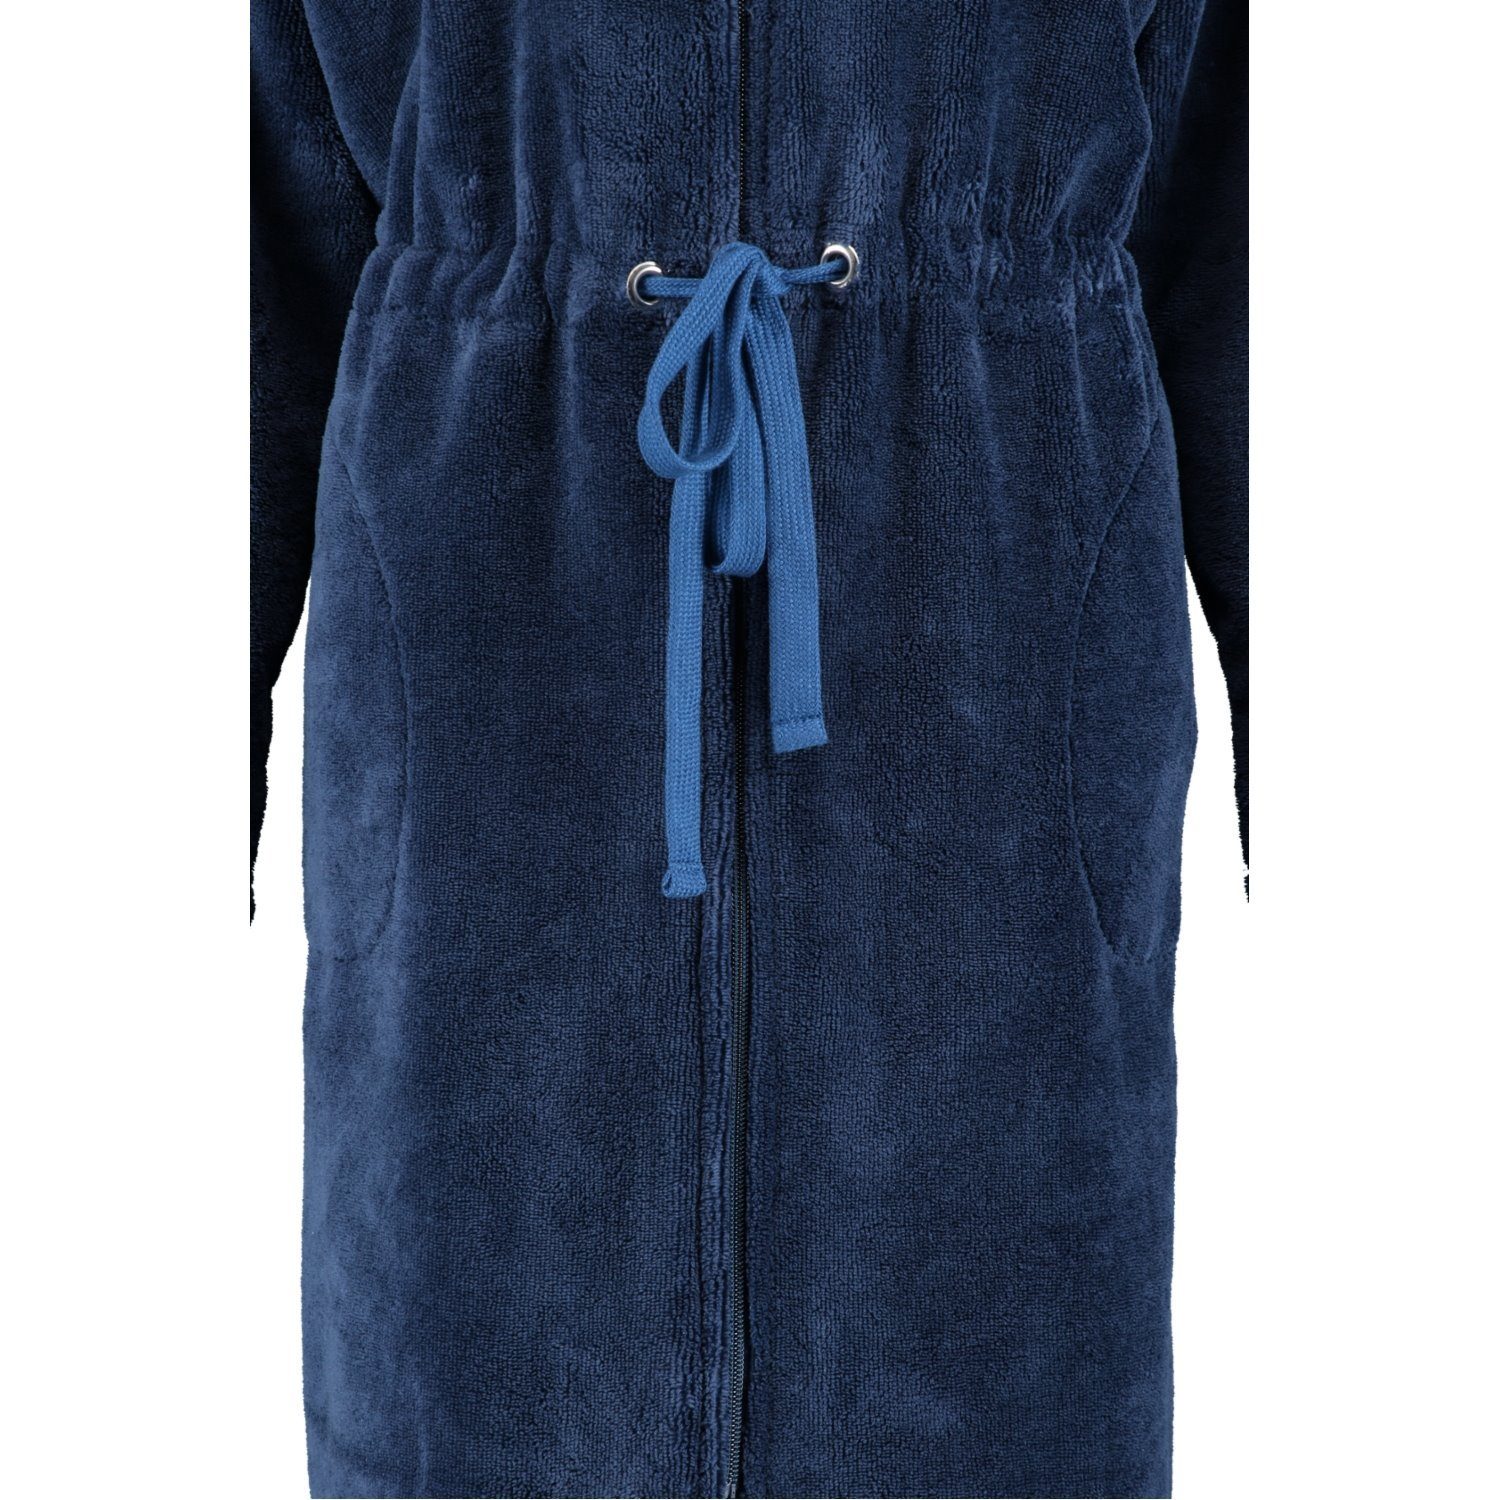 Reißverschluss, Cawö Baumwollmischung, Home Cawö 11 Damenbademantel blau 822, Reißverschluss Kurzform,